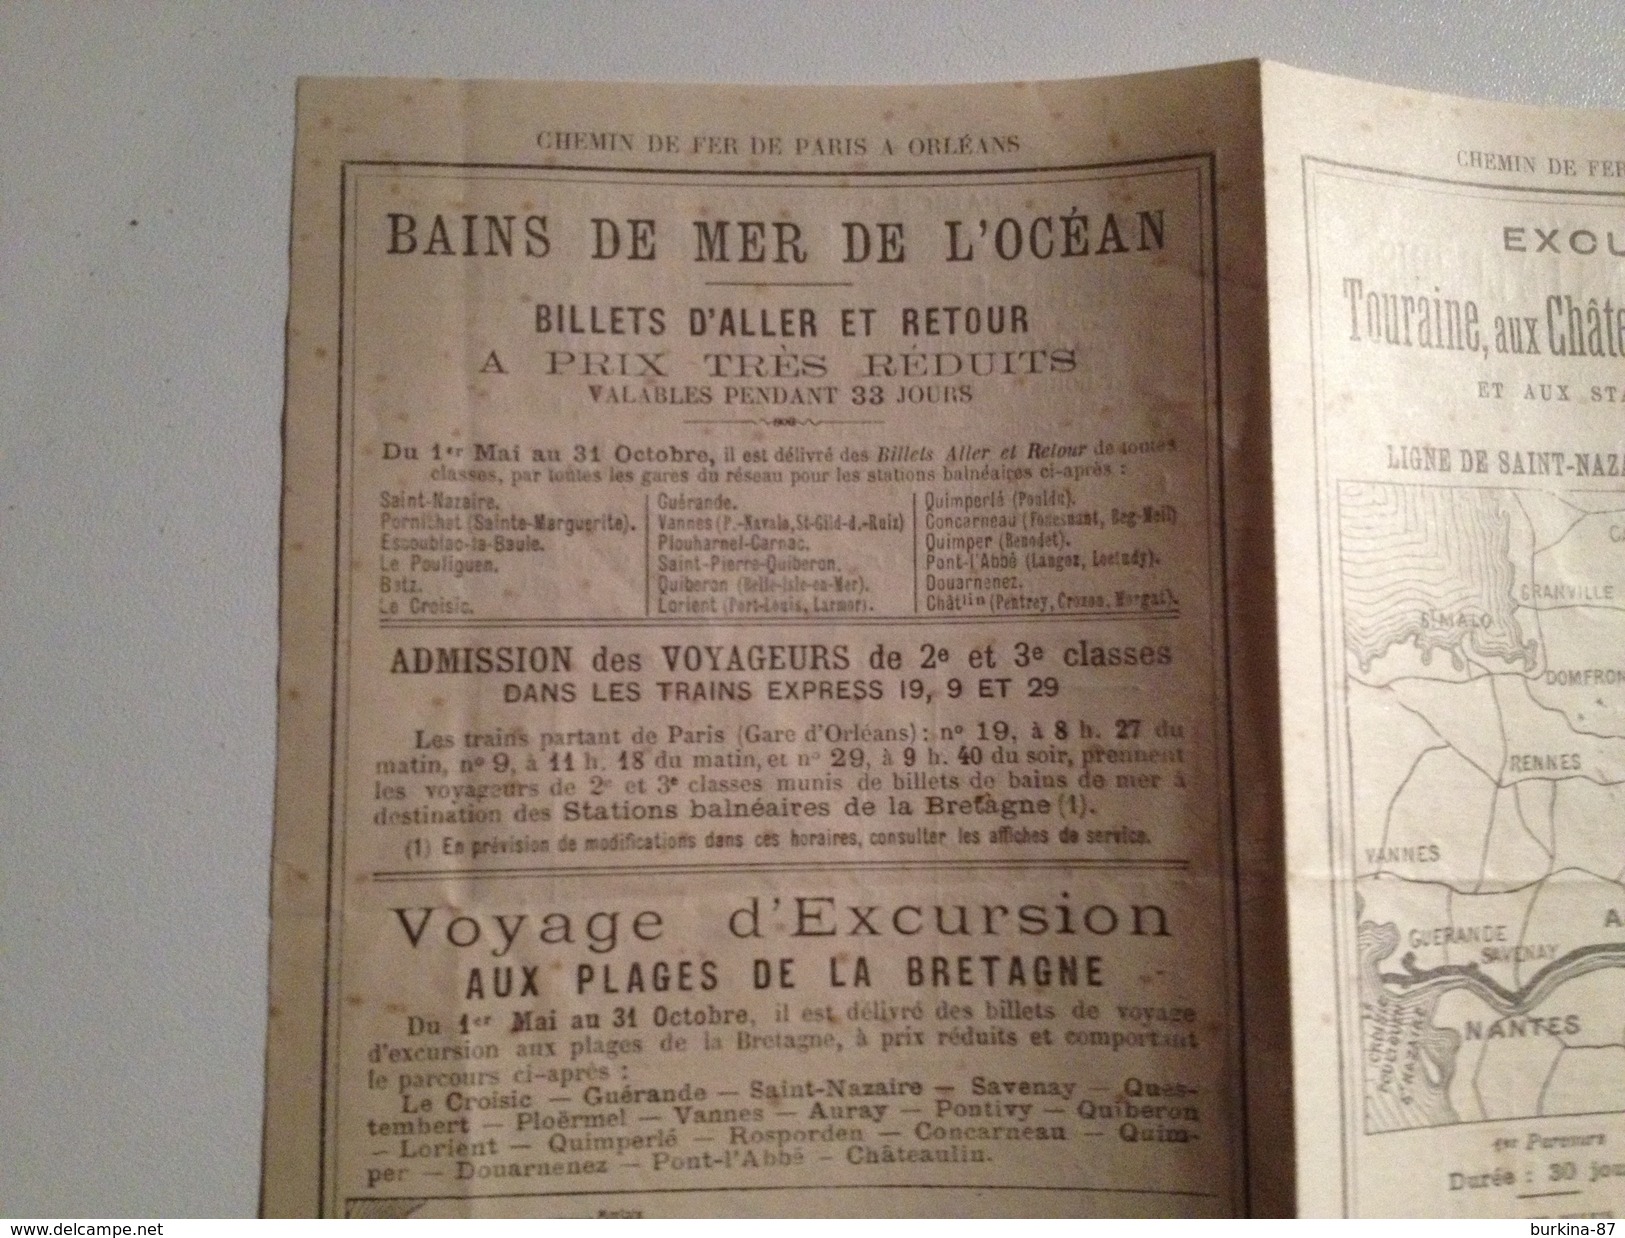 Chemin De Fer, Paris à Orlean, 1896, Publicité Vers Les Stations Thermales Et Excursions En Touraine - Europa